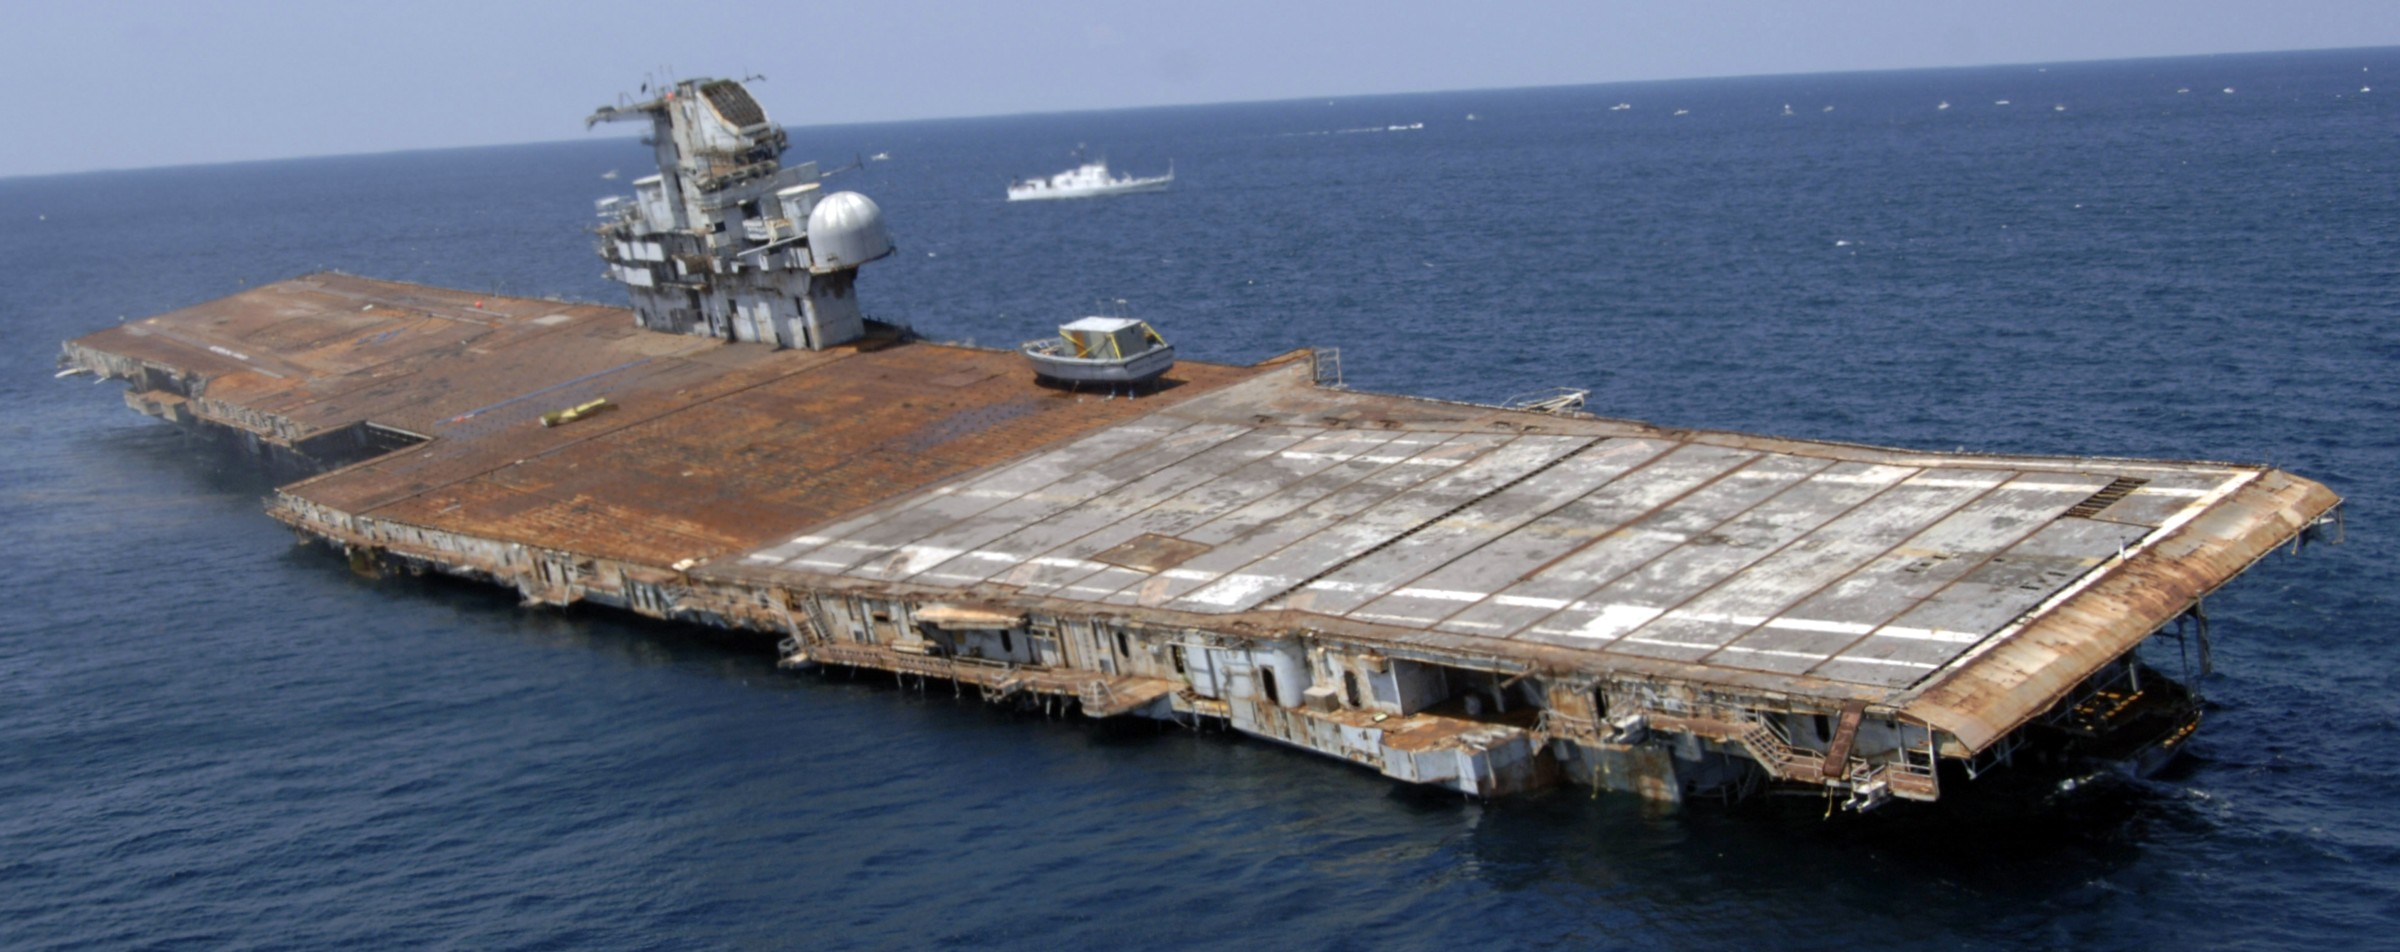 cv-34 uss oriskany essex class aircraft carrier us navy sinking artificial reef off florida 118